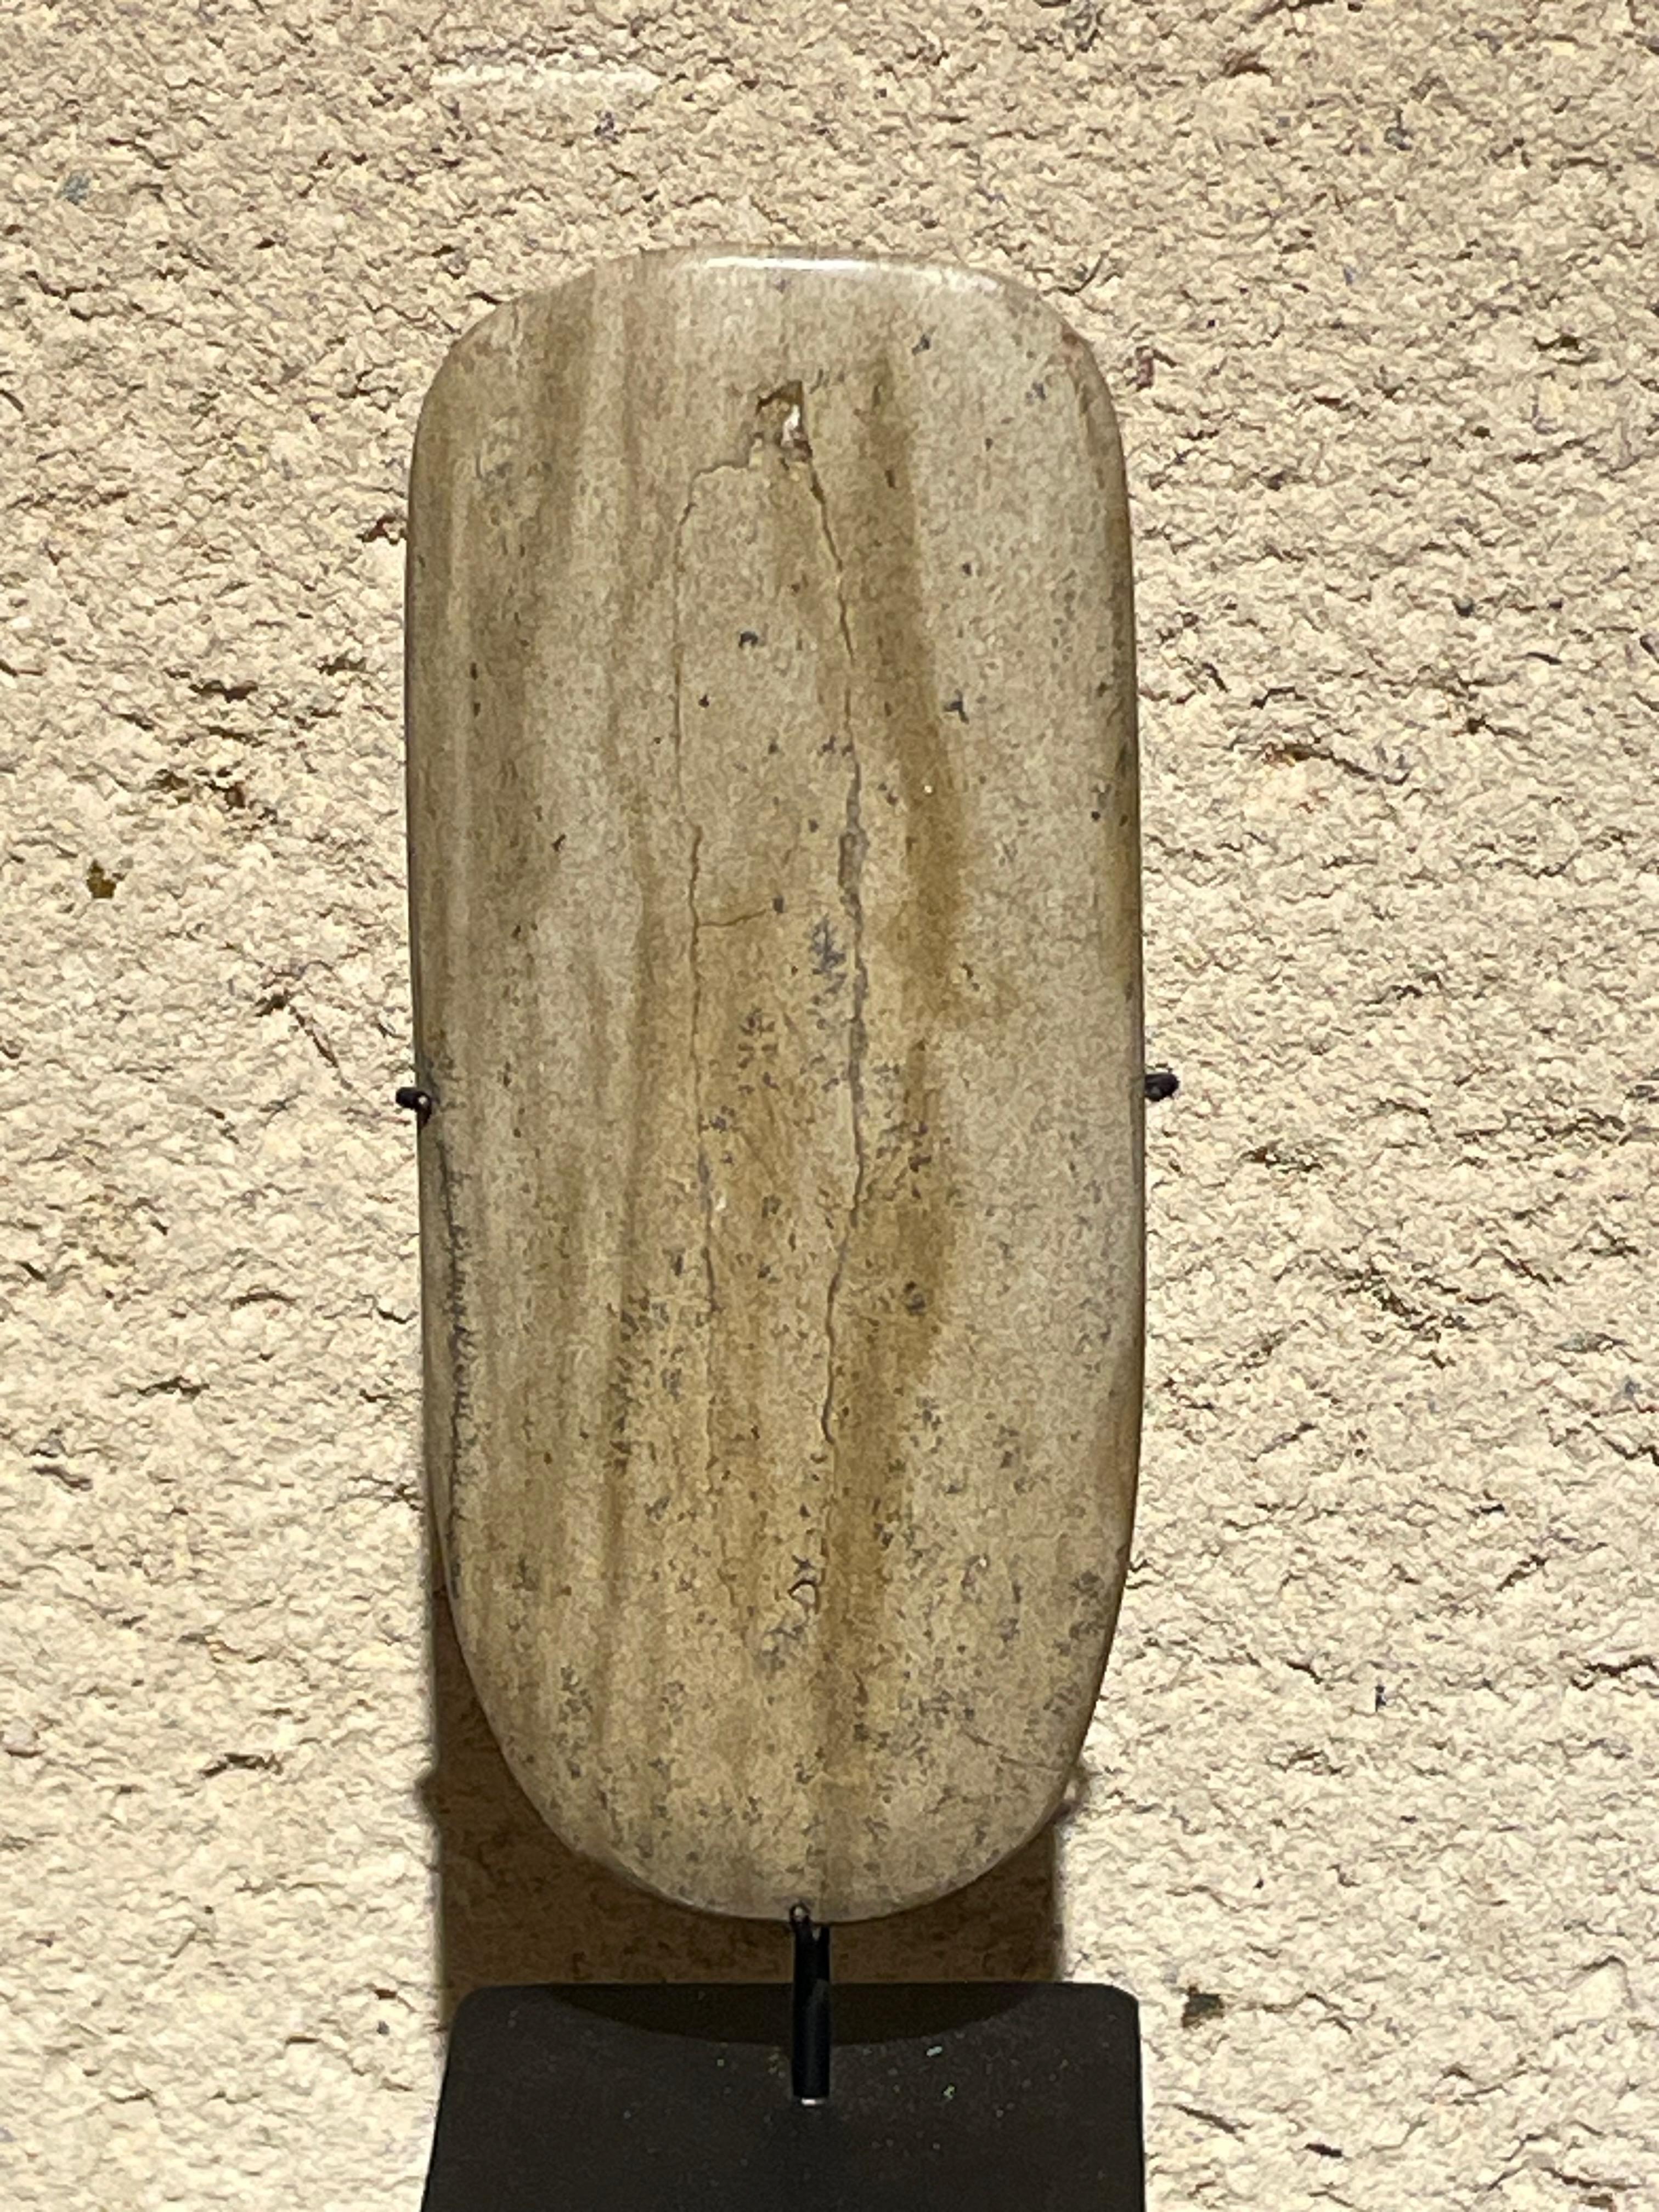 Chinesisches Steingerät aus den 1920er Jahren, das zum Schärfen von Leder verwendet wurde.
Der Stein ist glatt und poliert.
Montiert auf Messständer  3